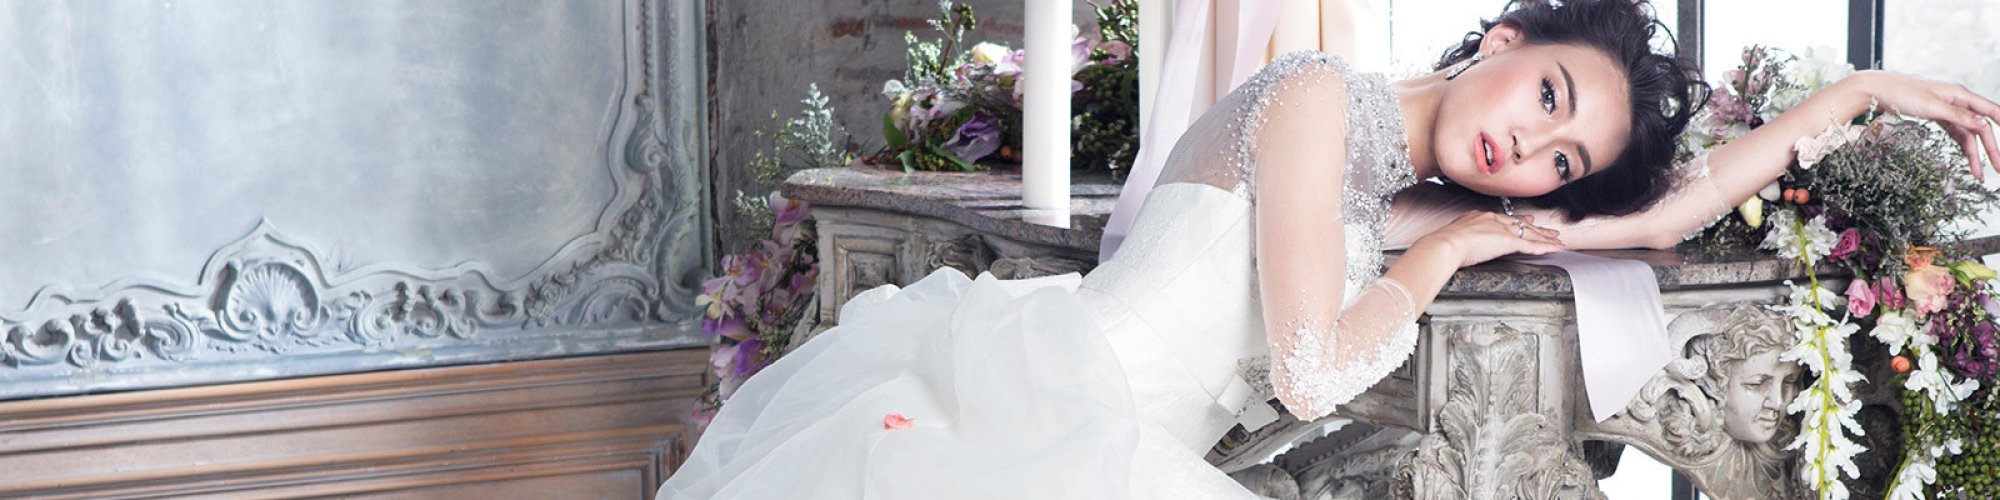 Malena bridal Haute Couture